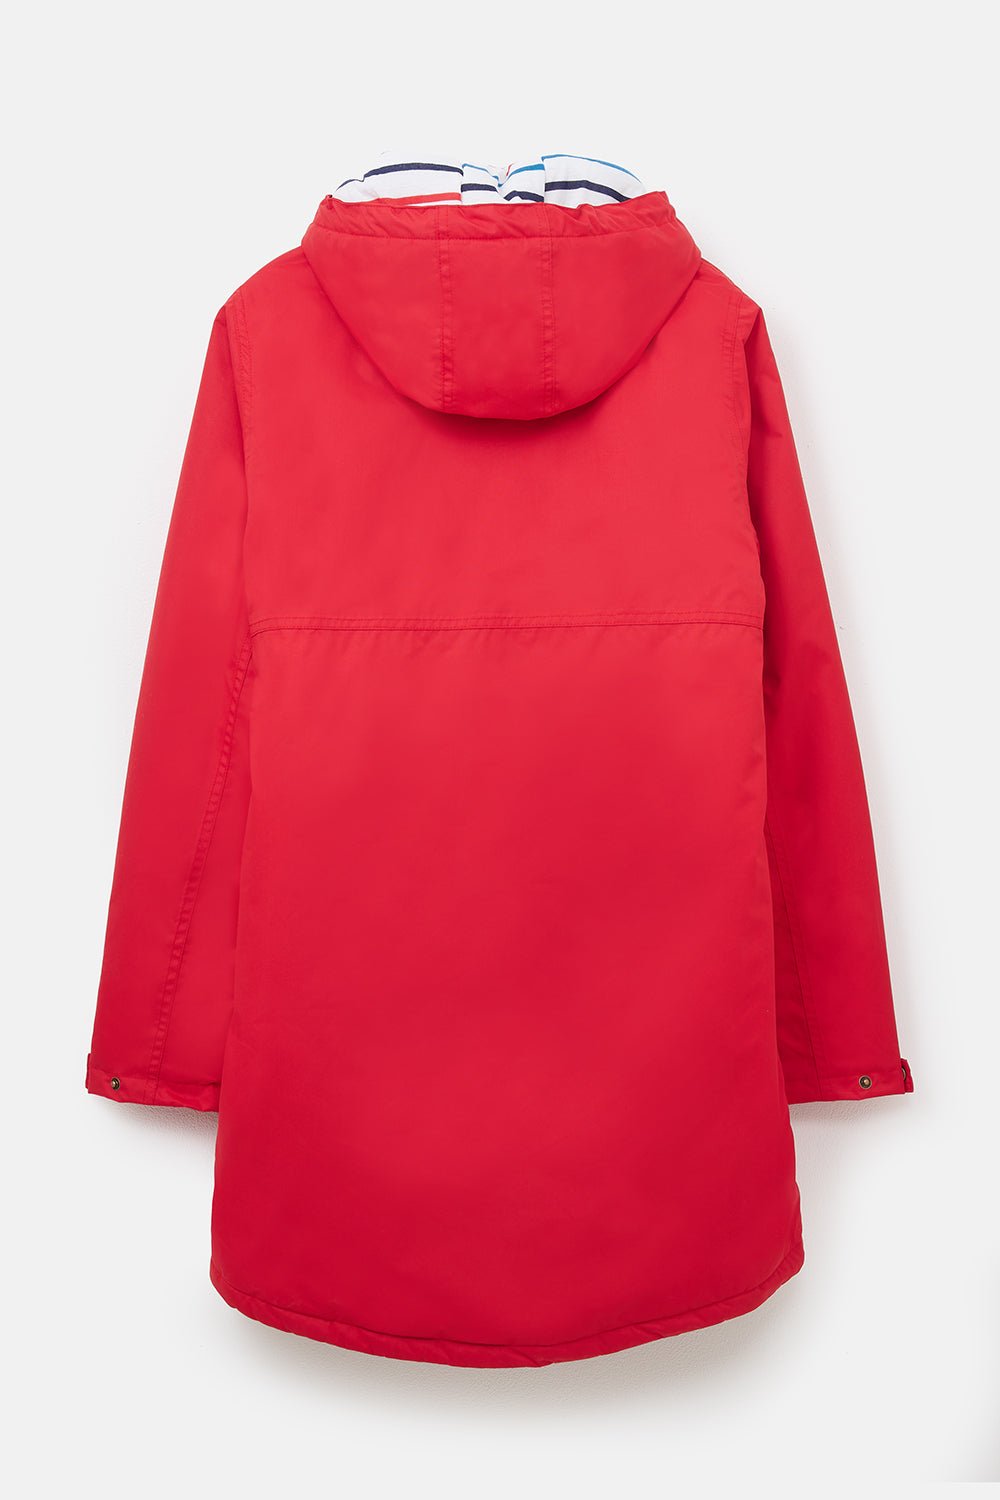 Eva Long Women's Waterproof Coat, Red